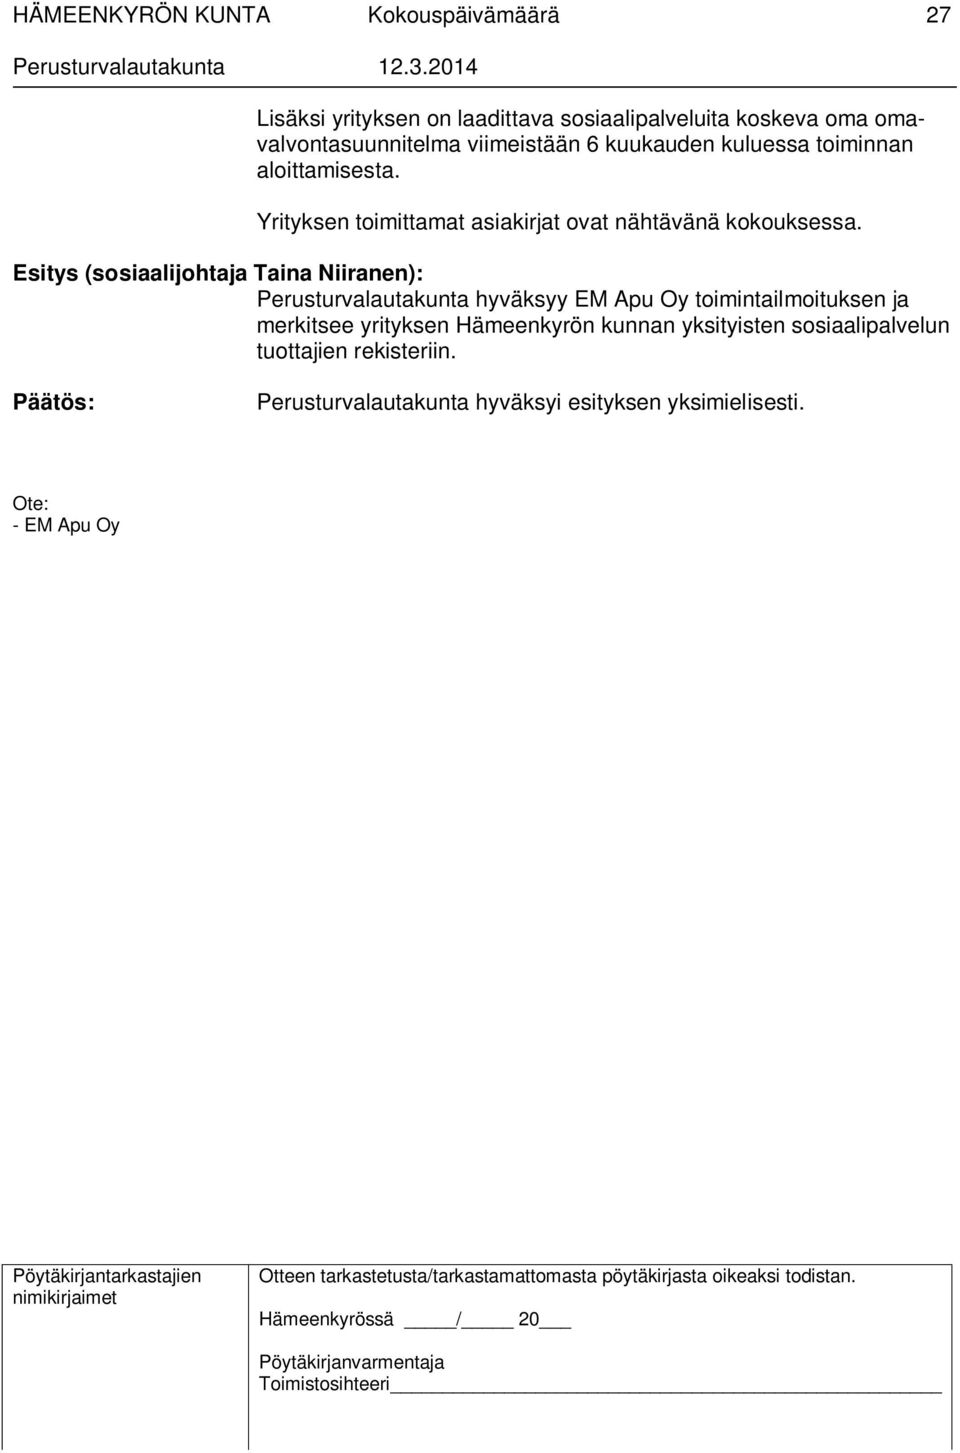 Esitys (sosiaalijohtaja Taina Niiranen): Perusturvalautakunta hyväksyy EM Apu Oy toimintailmoituksen ja merkitsee